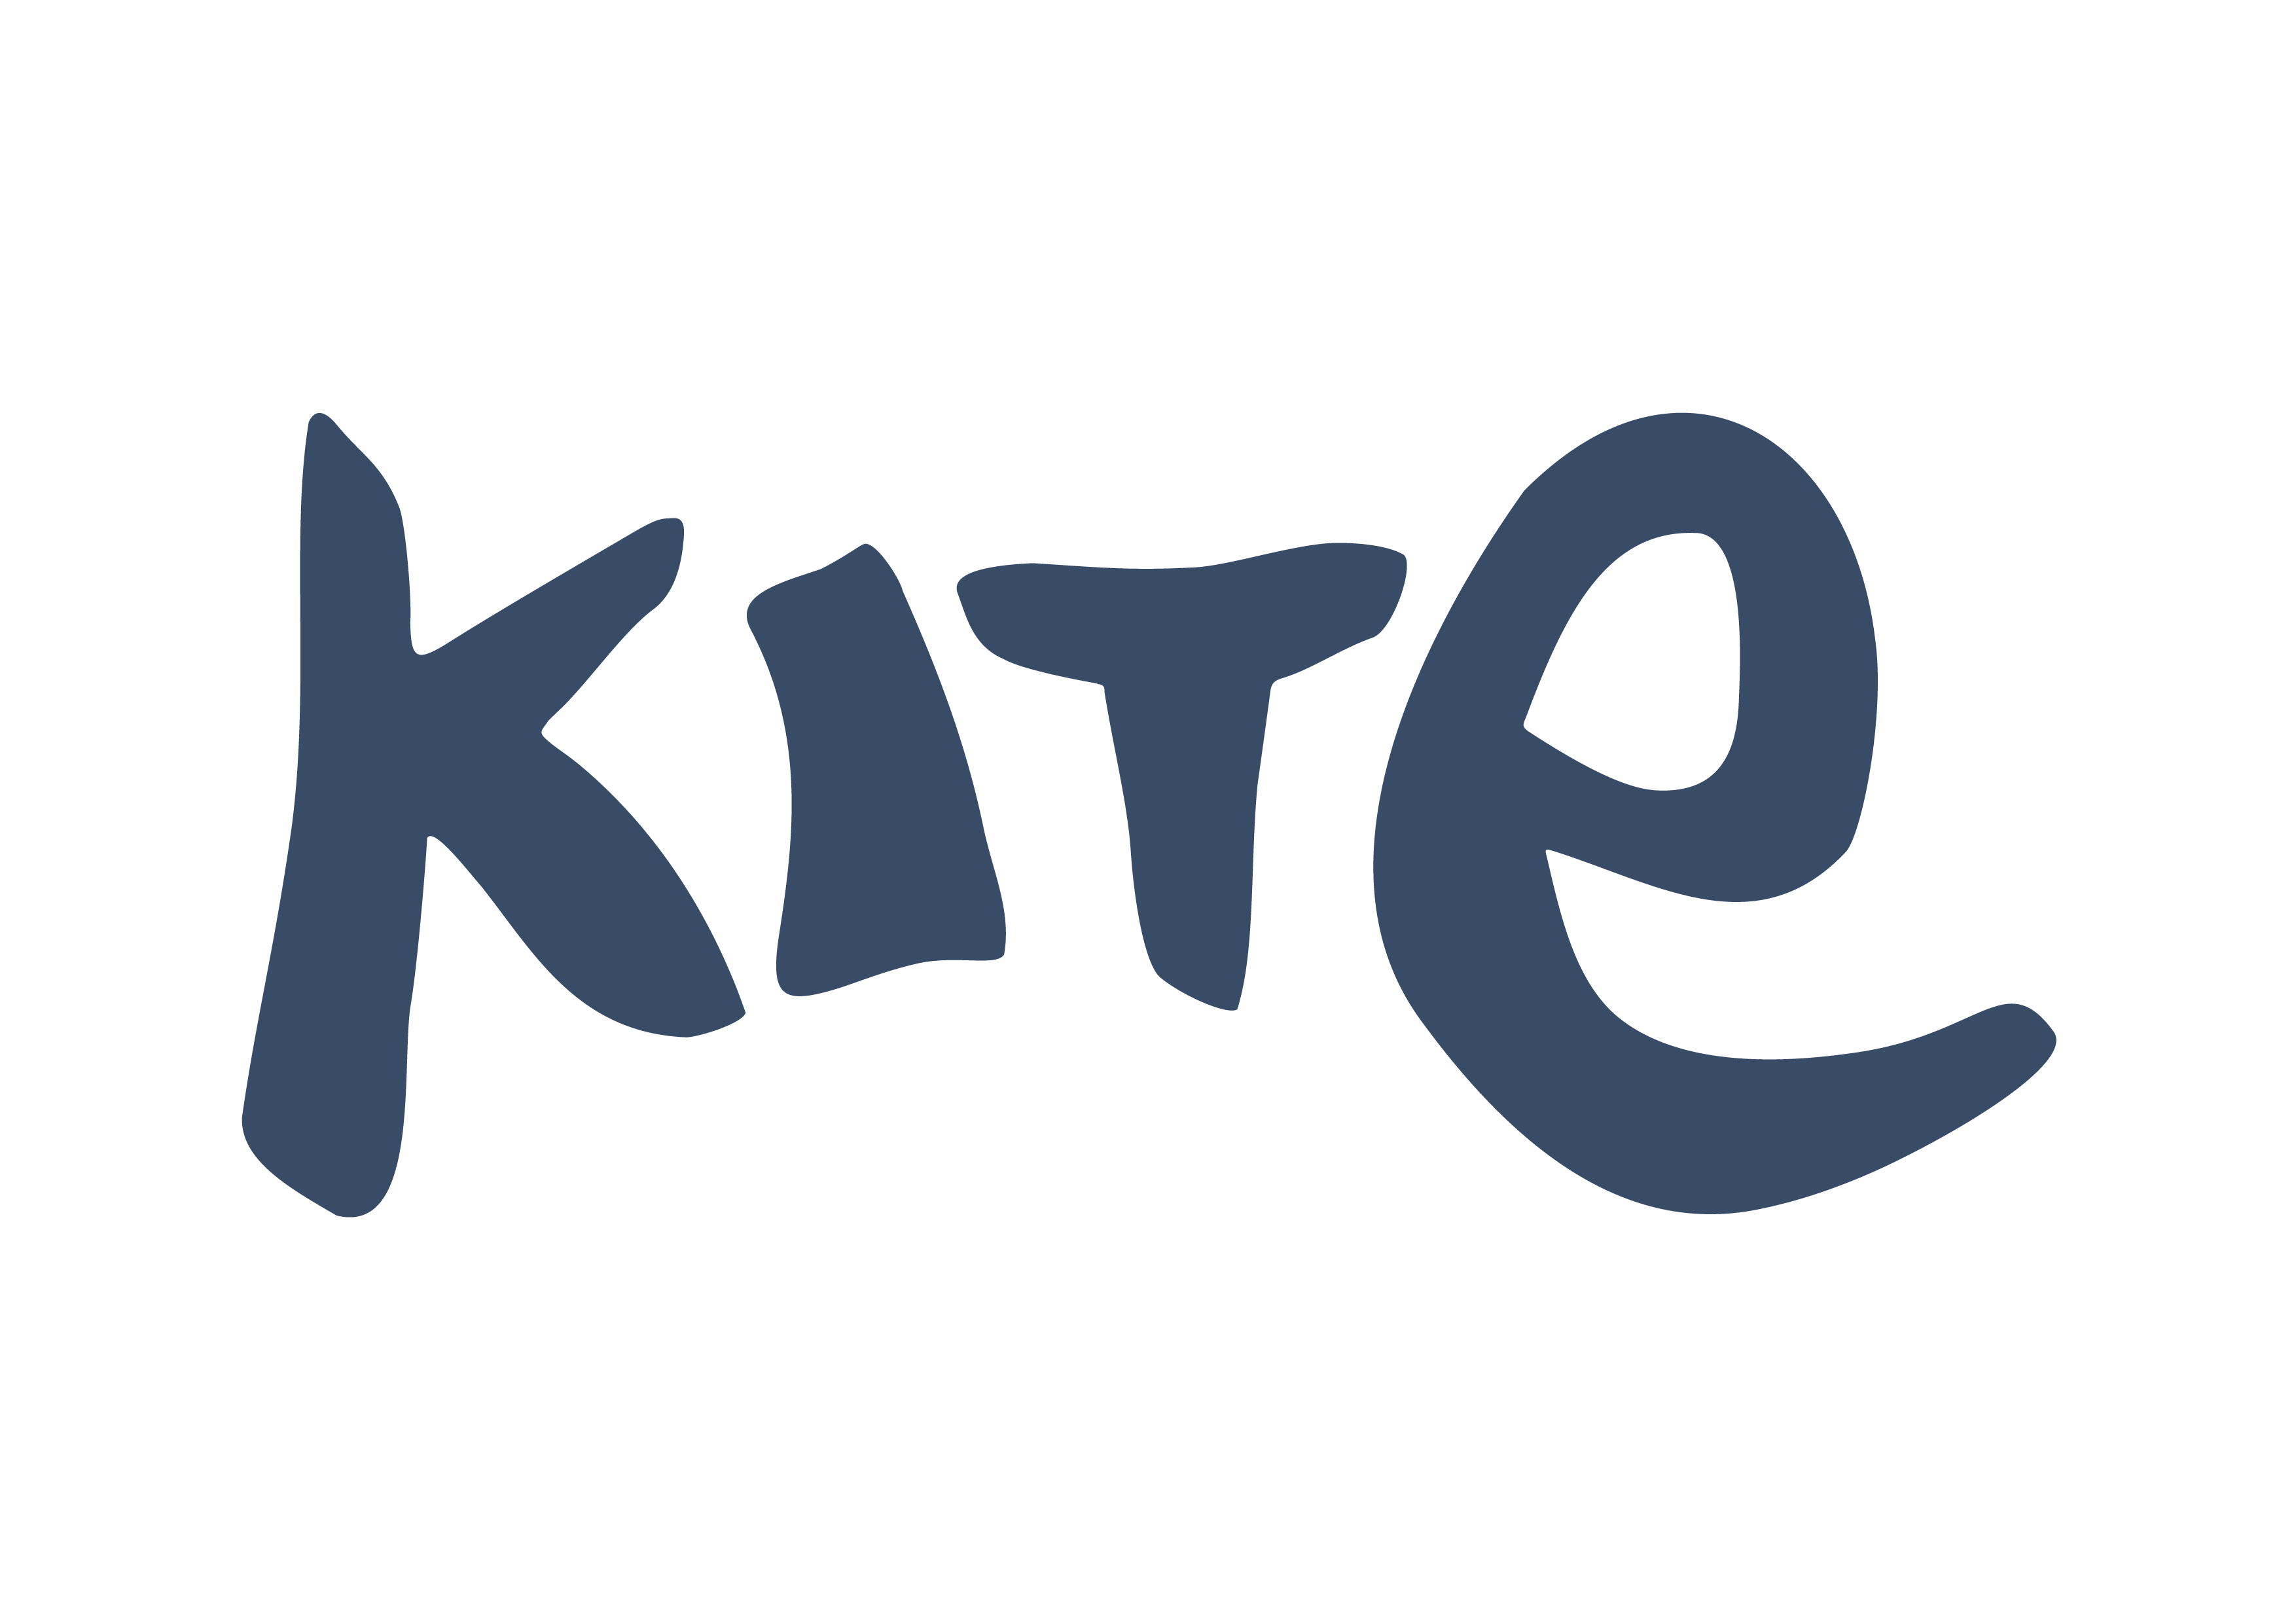 Jurk Groovy dot sundress - Kite Clothing